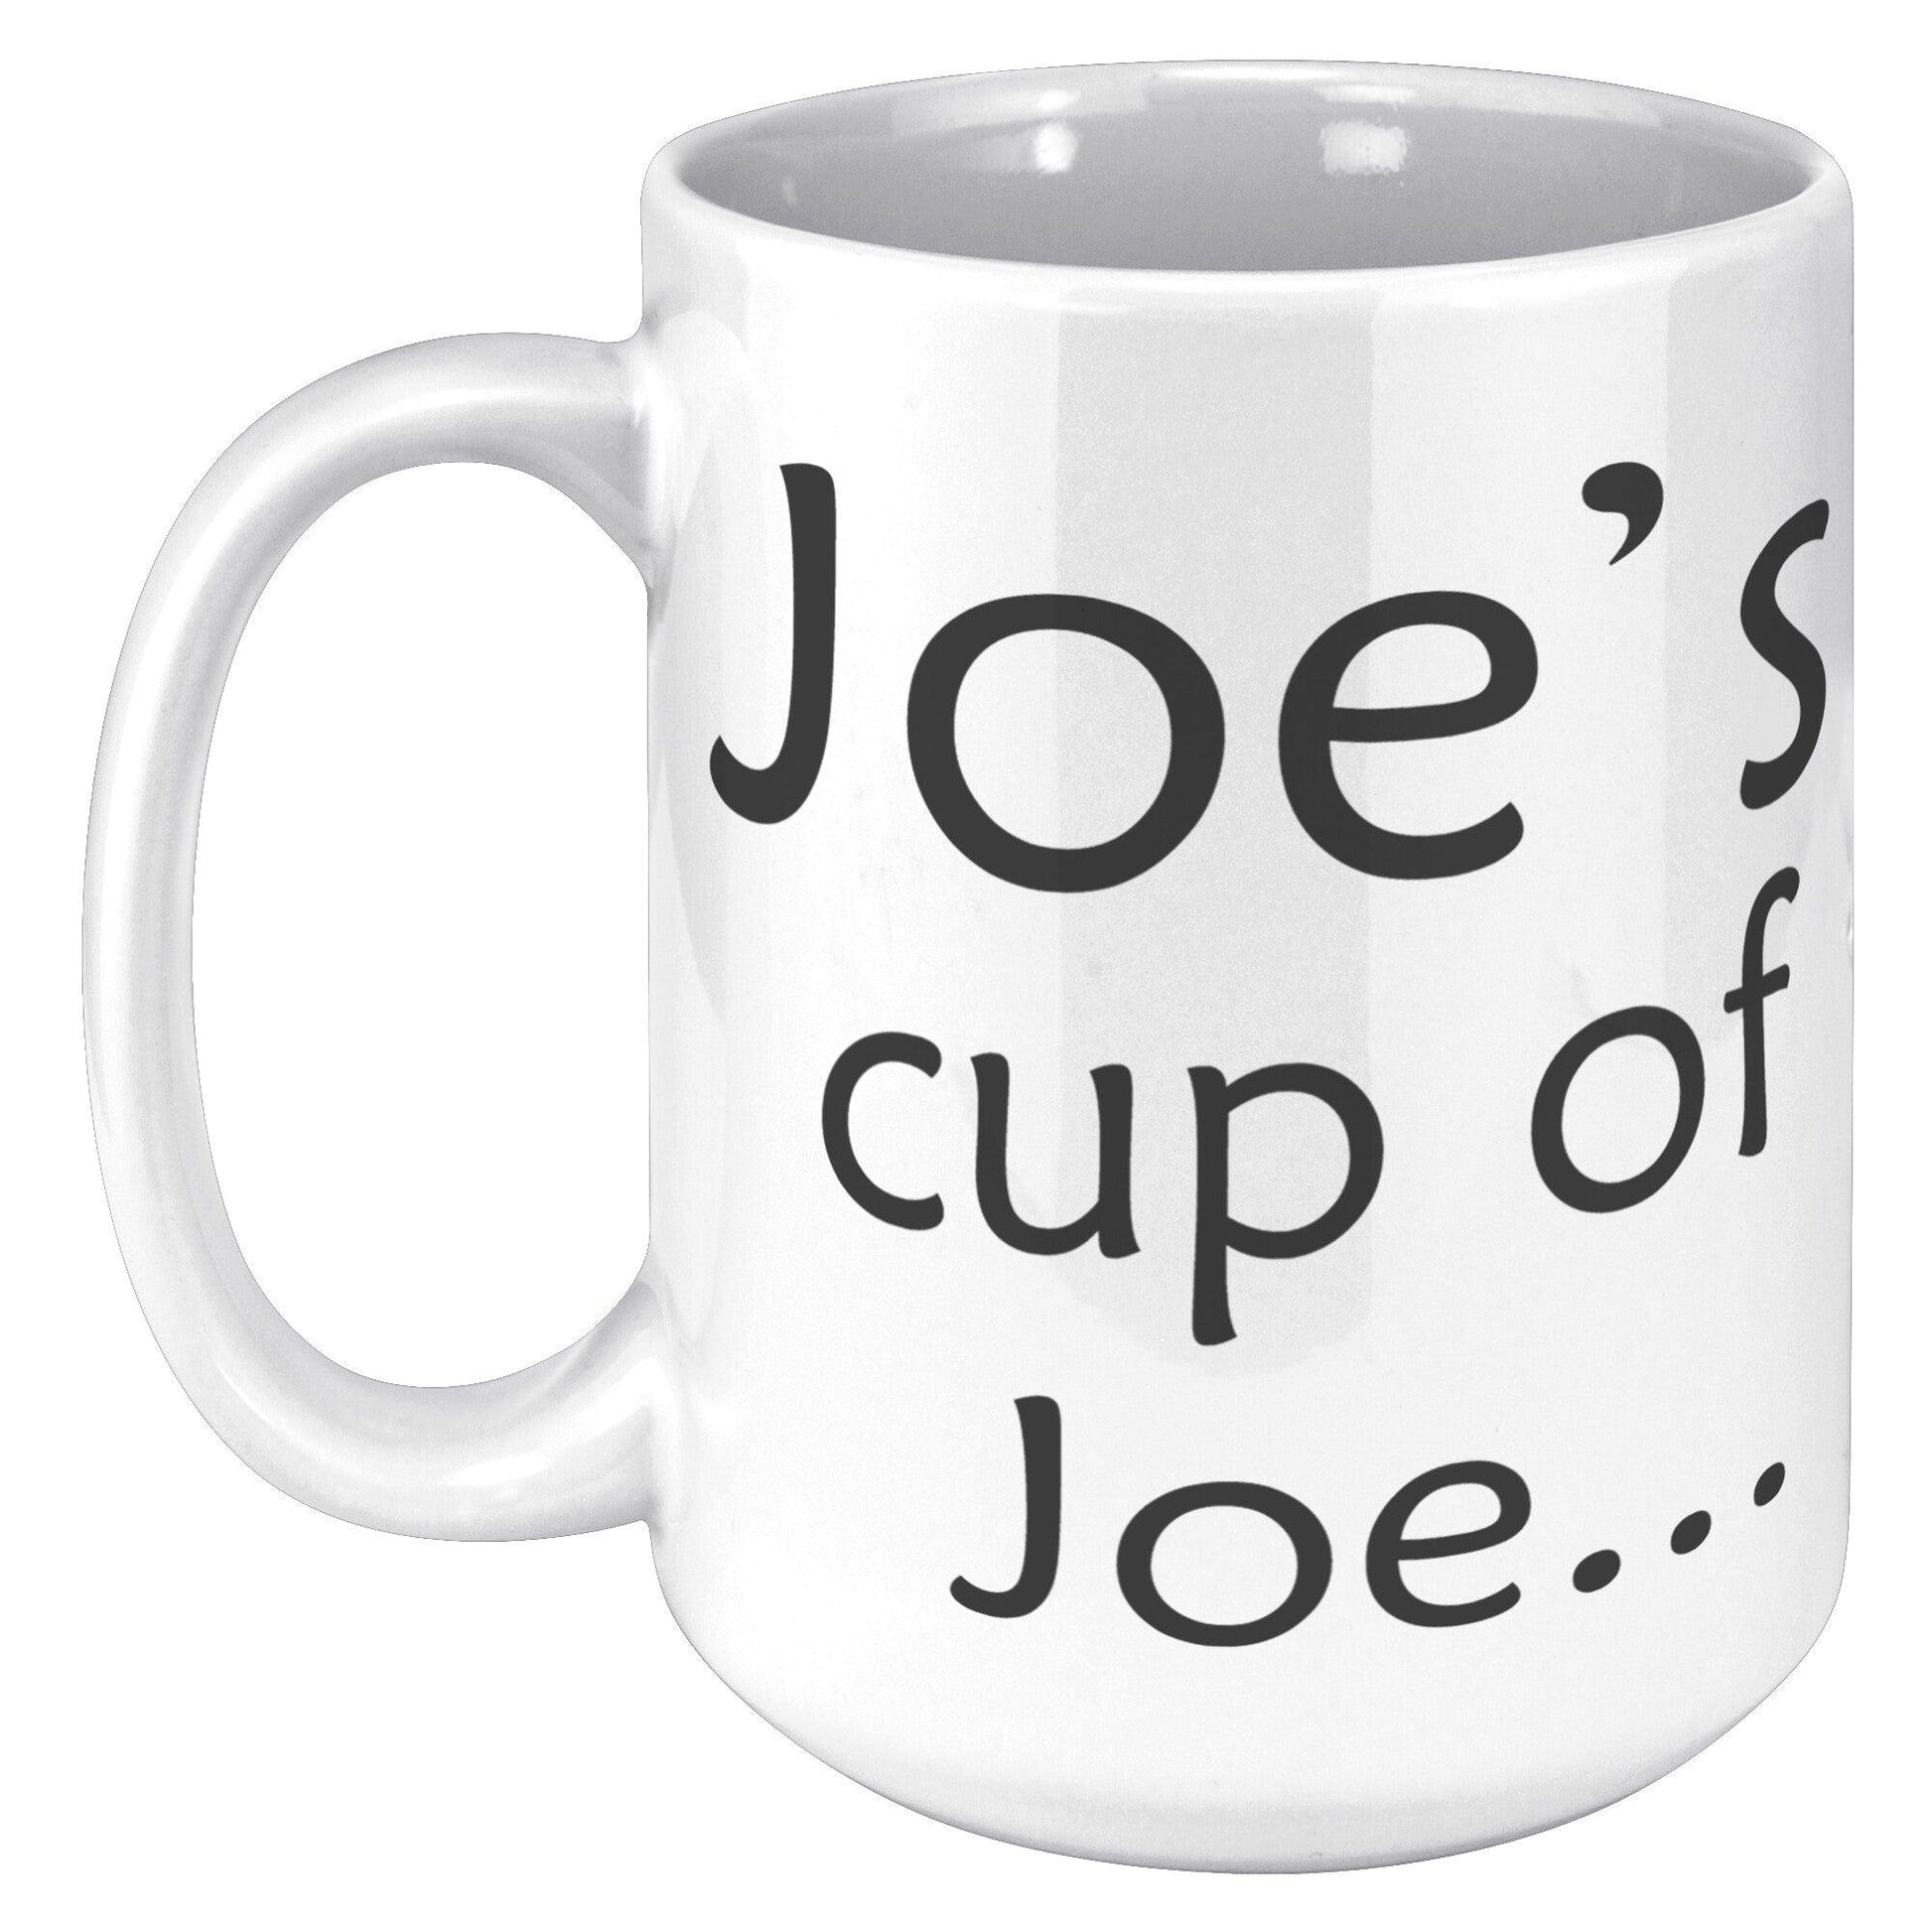 Joe's Cup Of Joe... White Mug - TheGivenGet